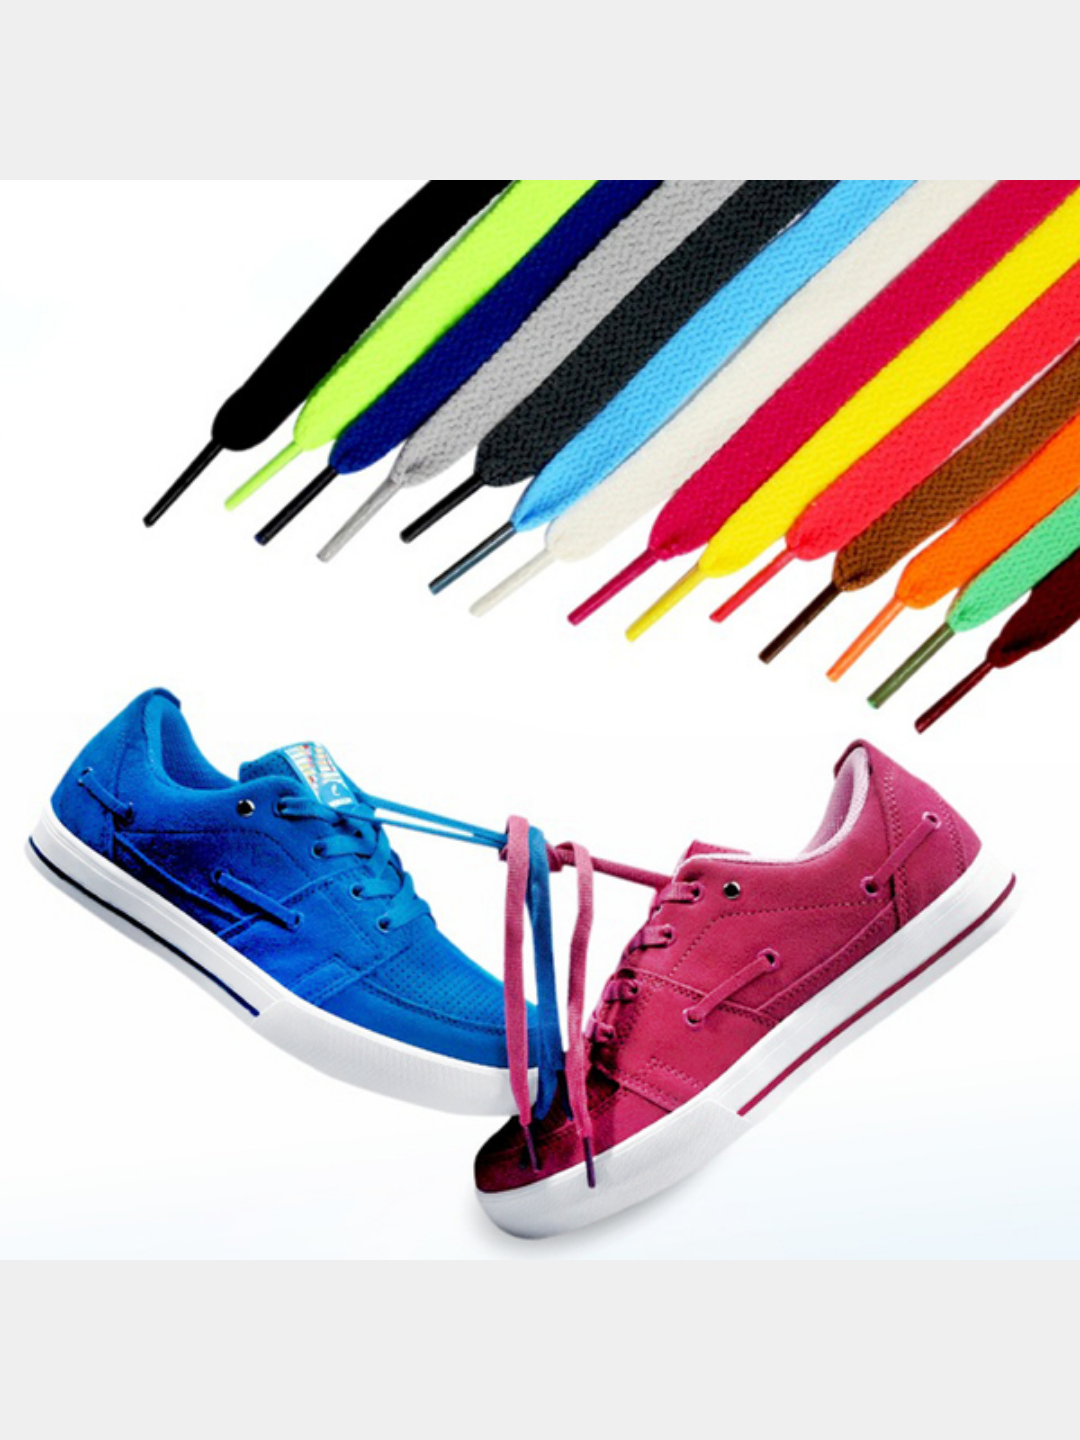 Разноцветные шнурки